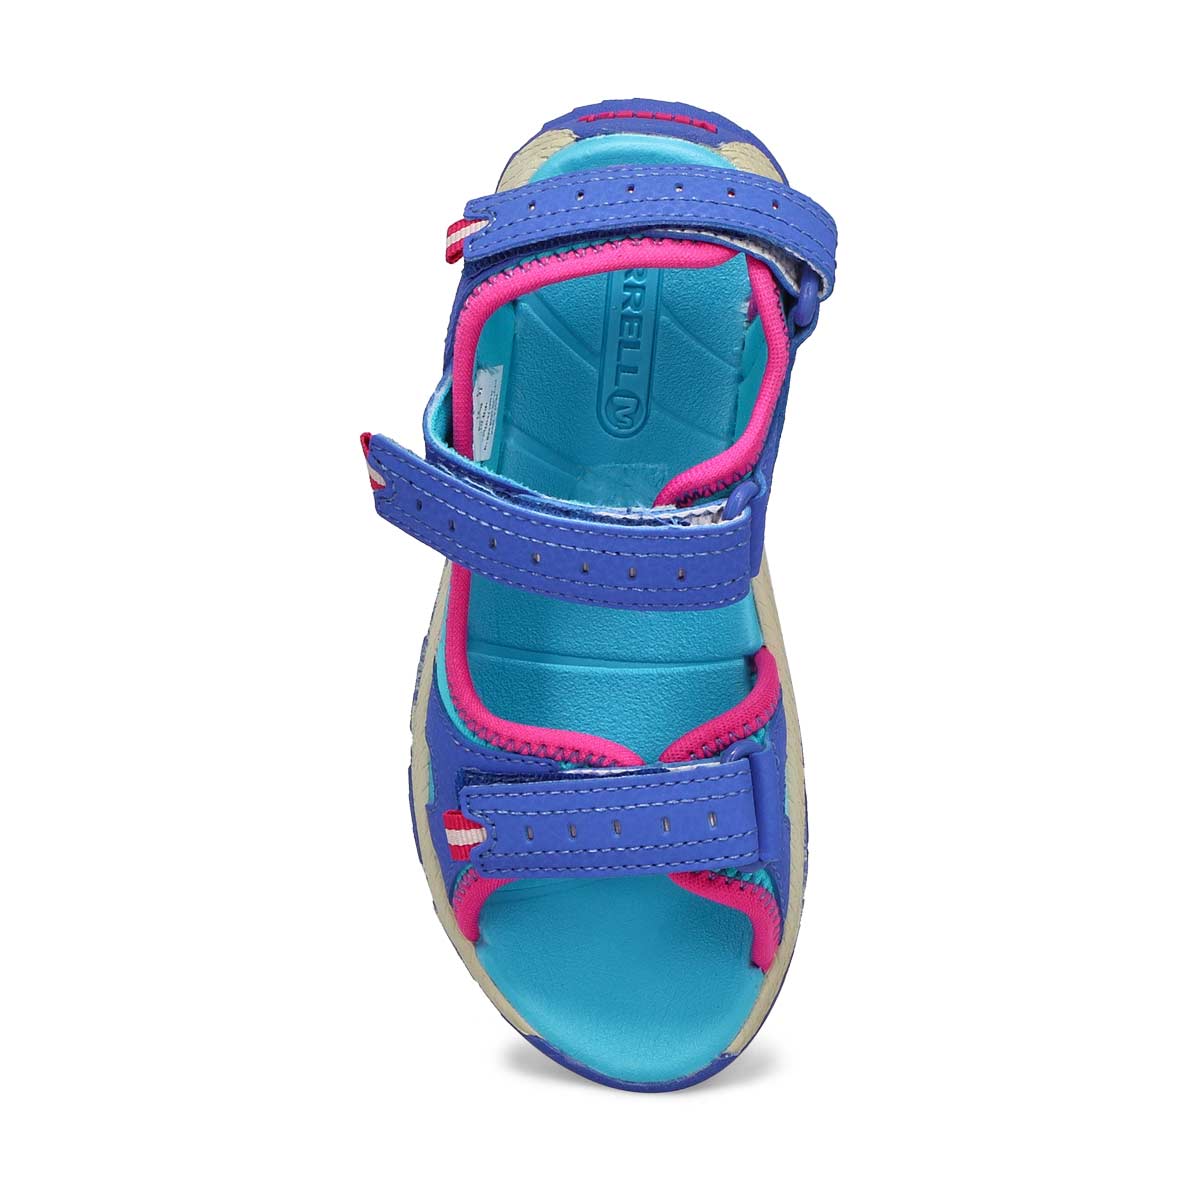 Sandale sport PANTHER 2.0, filles